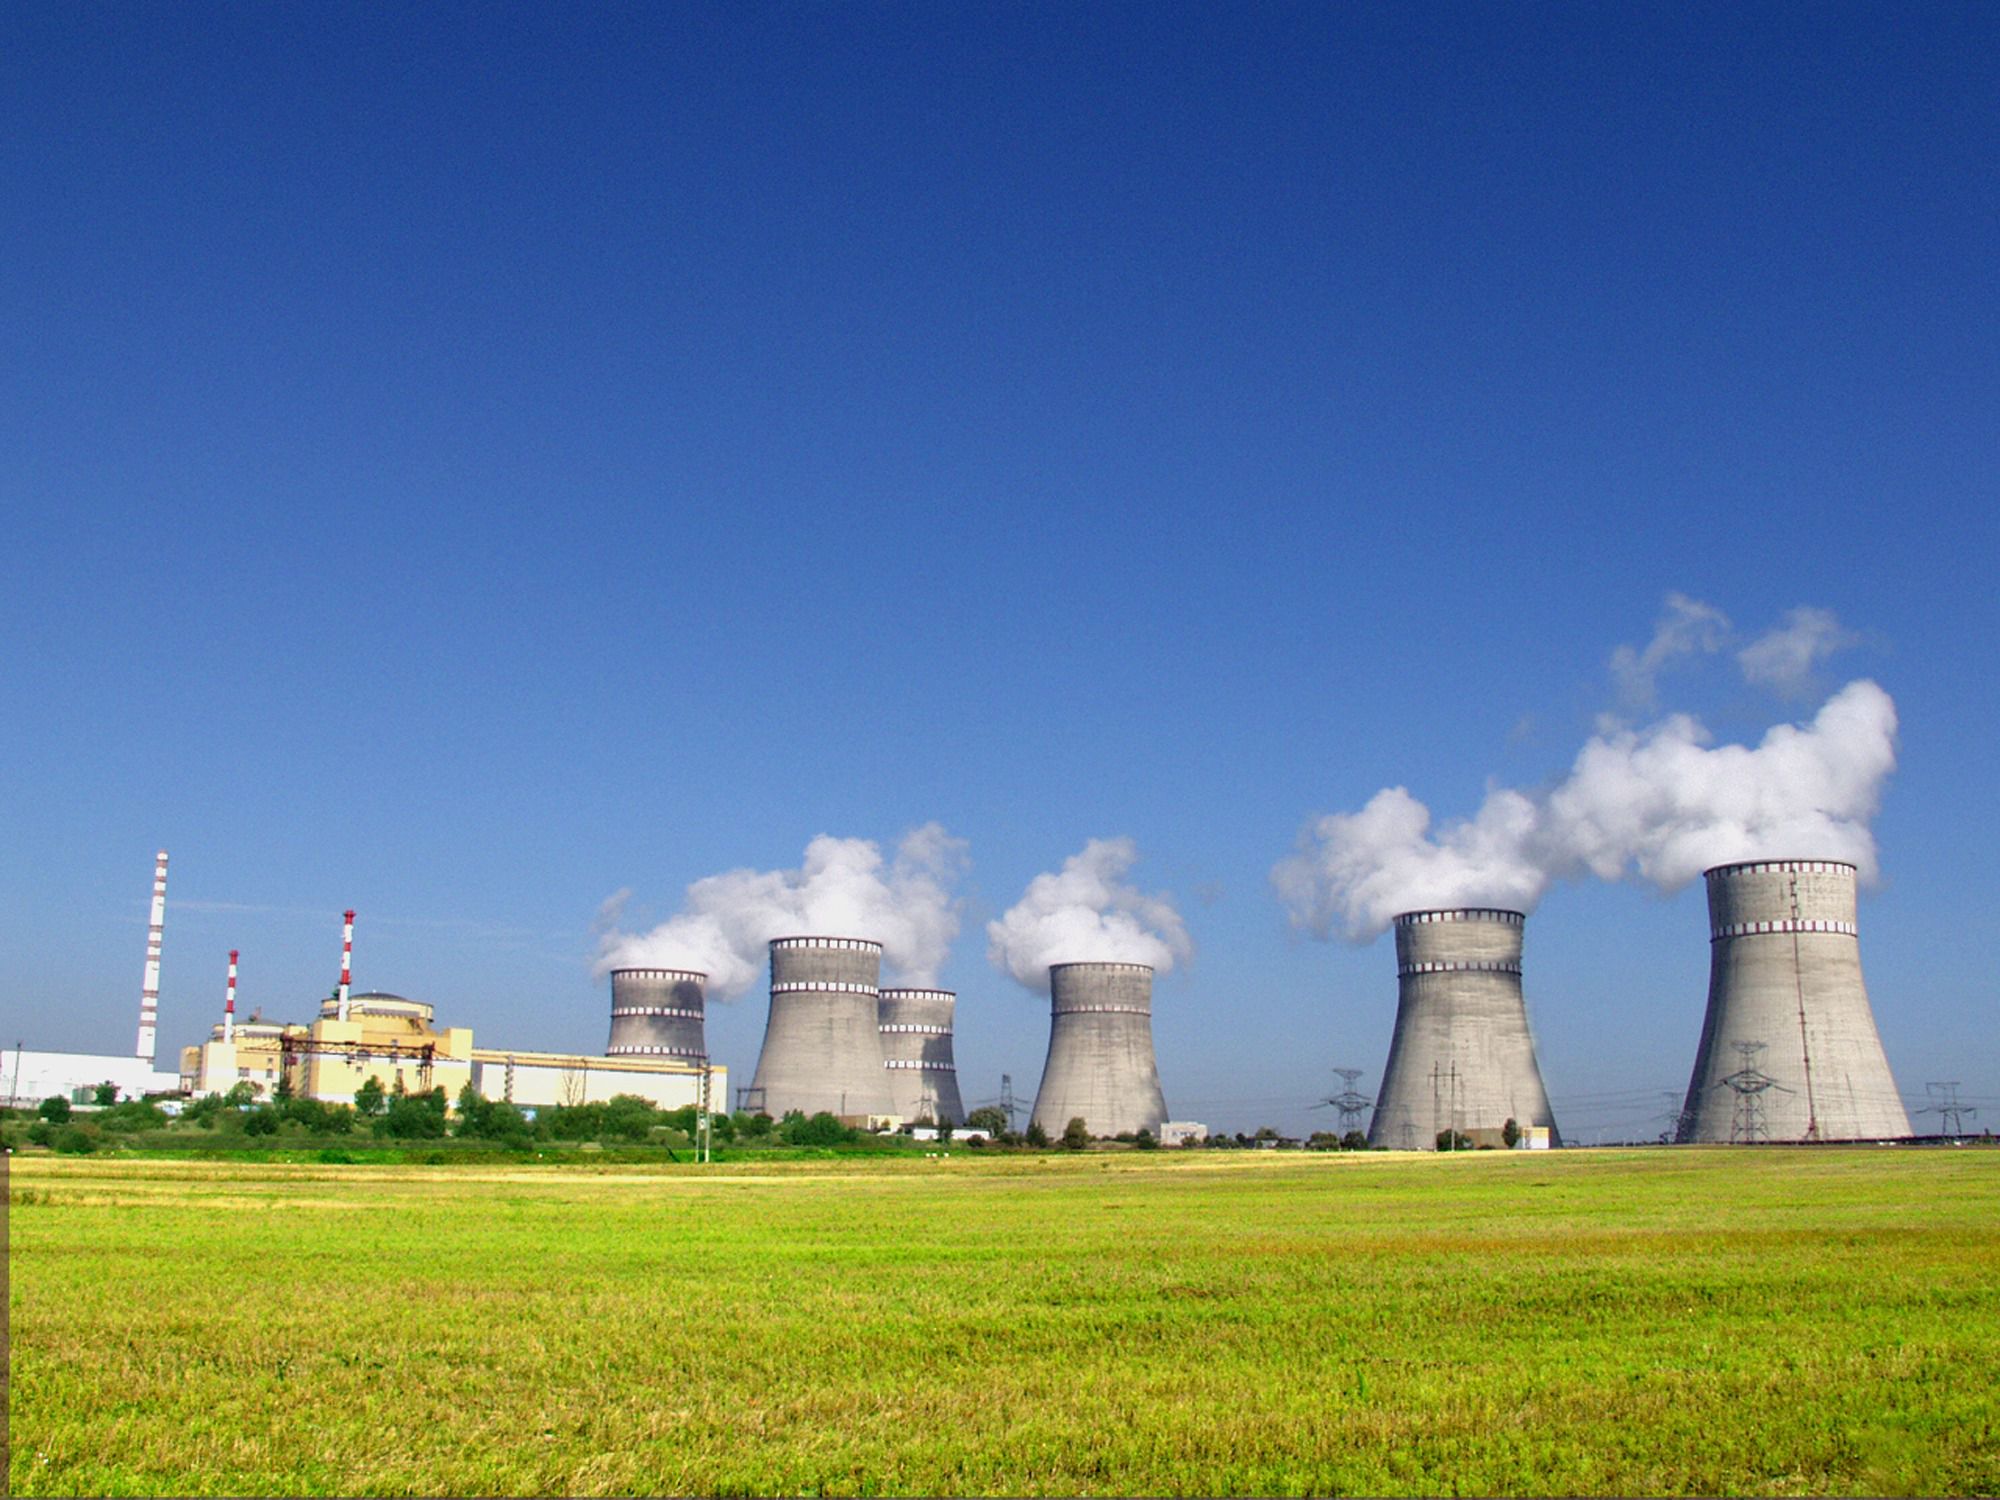 Частка атомної енергетики в загальному балансі країни збільшилася майже до 60% - Порошенко. Розвиток галузі вже дозволив Україні відмовитися від закупівель мільйонів тонн вугілля.